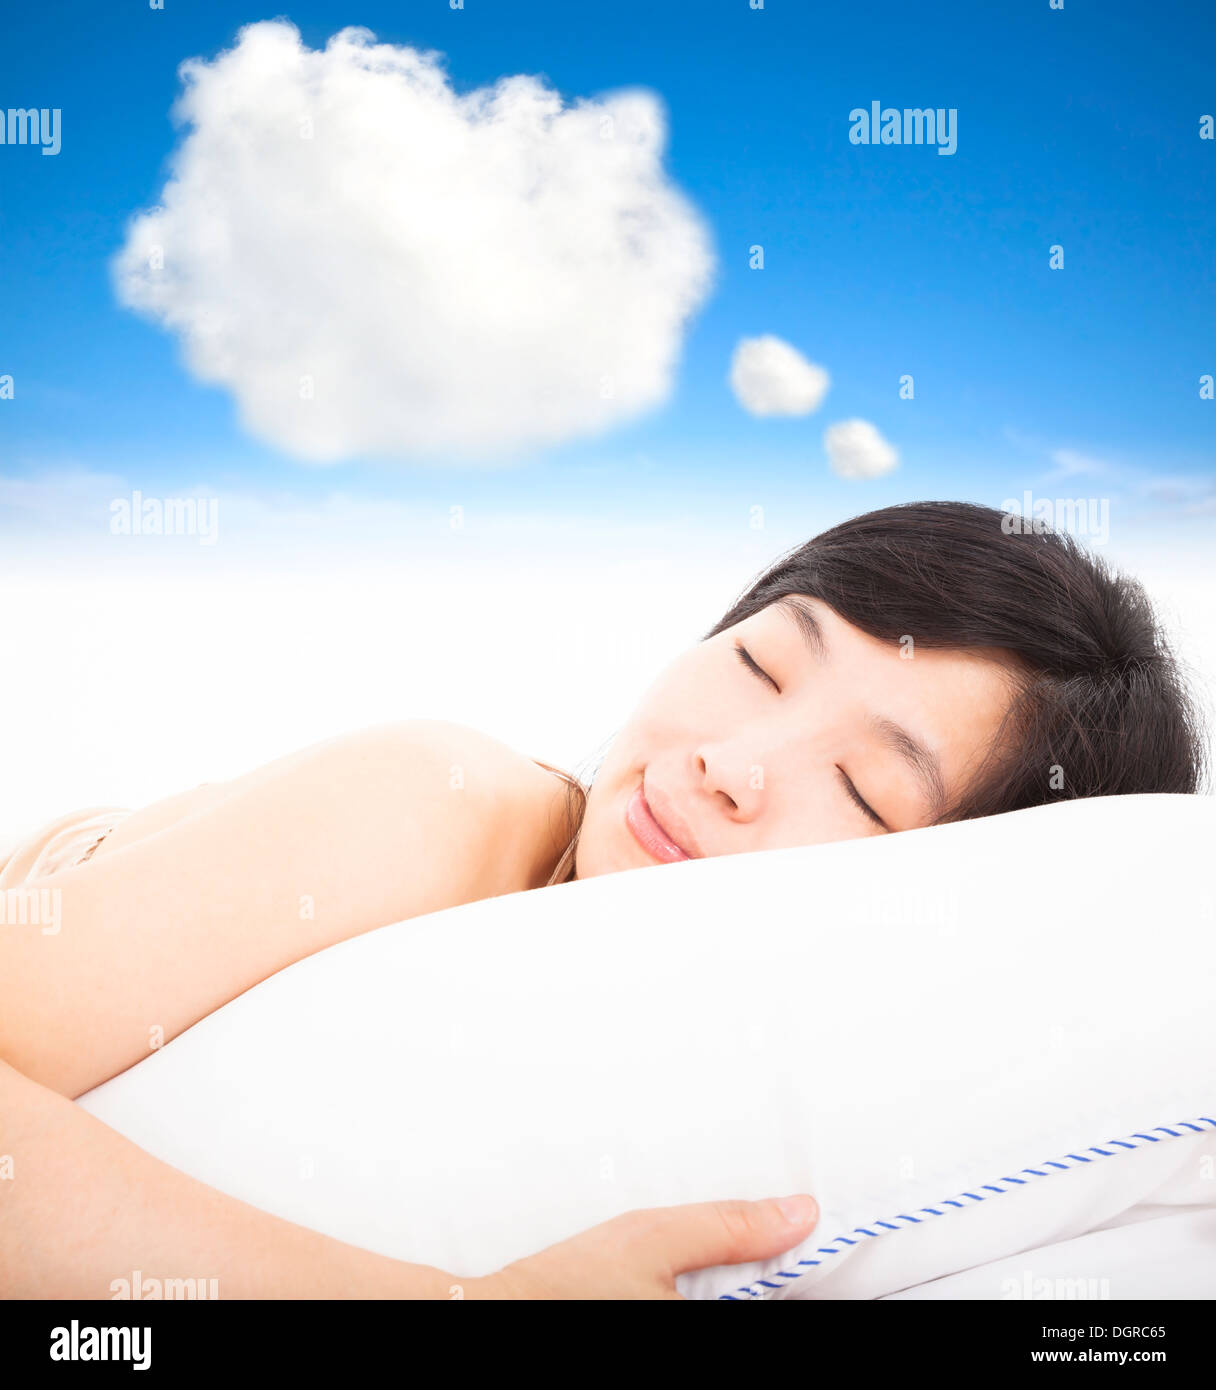 Sourire et femme endormie avec rêves signe cloud Banque D'Images